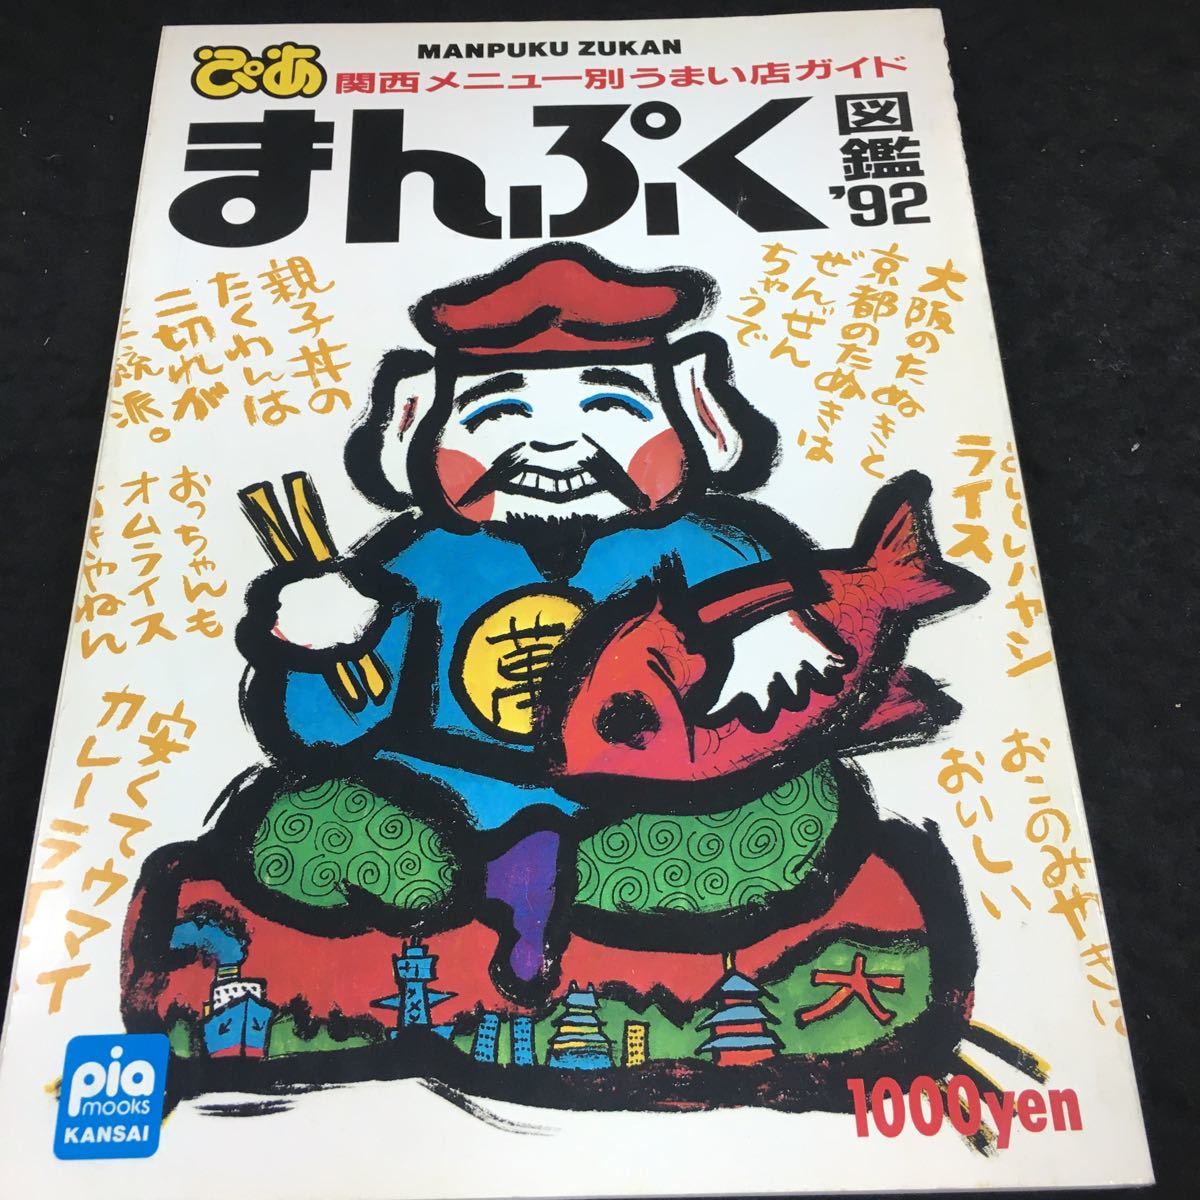 g-430 ぴあ まんぷく図鑑'92 関西メニュー別うまい店ガイド 1991年10月20日 発行 ※6_画像1